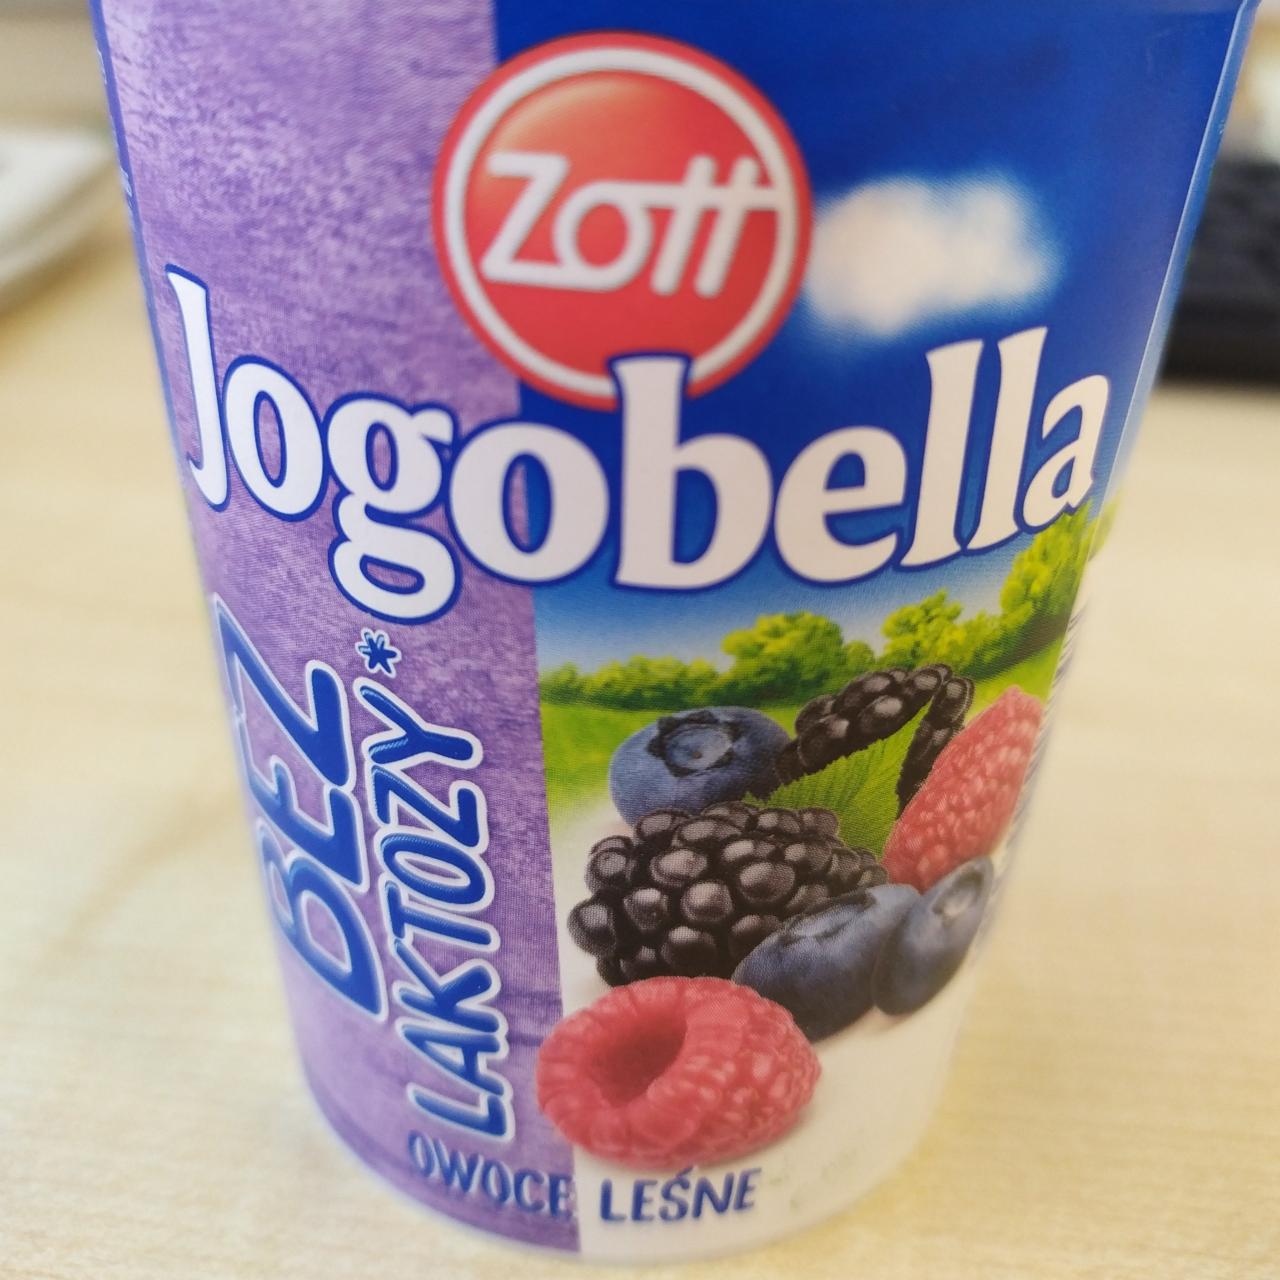 Fotografie - Jogobella lactose free lesní ovoce Zott